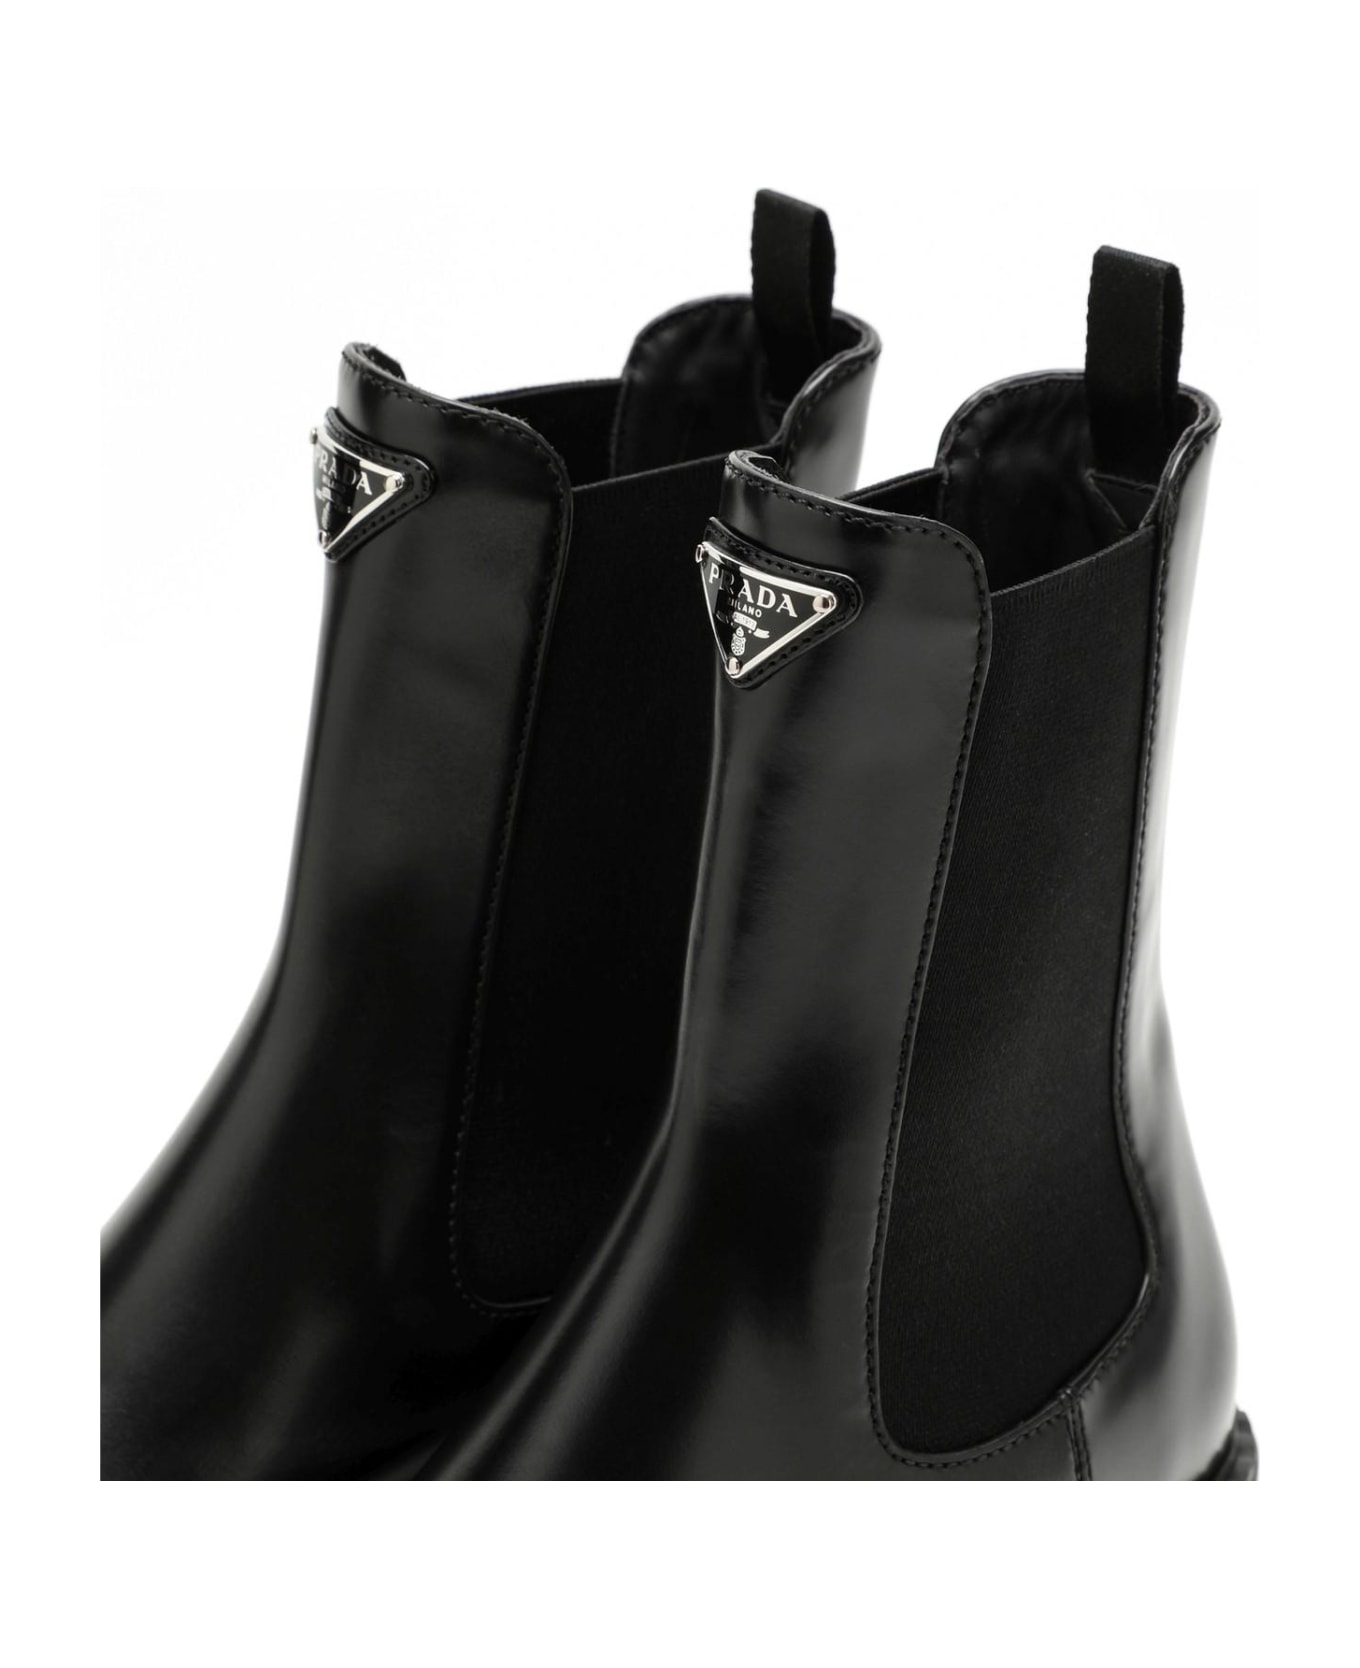 Prada Black Leather Beatles Boot - Nero ブーツ